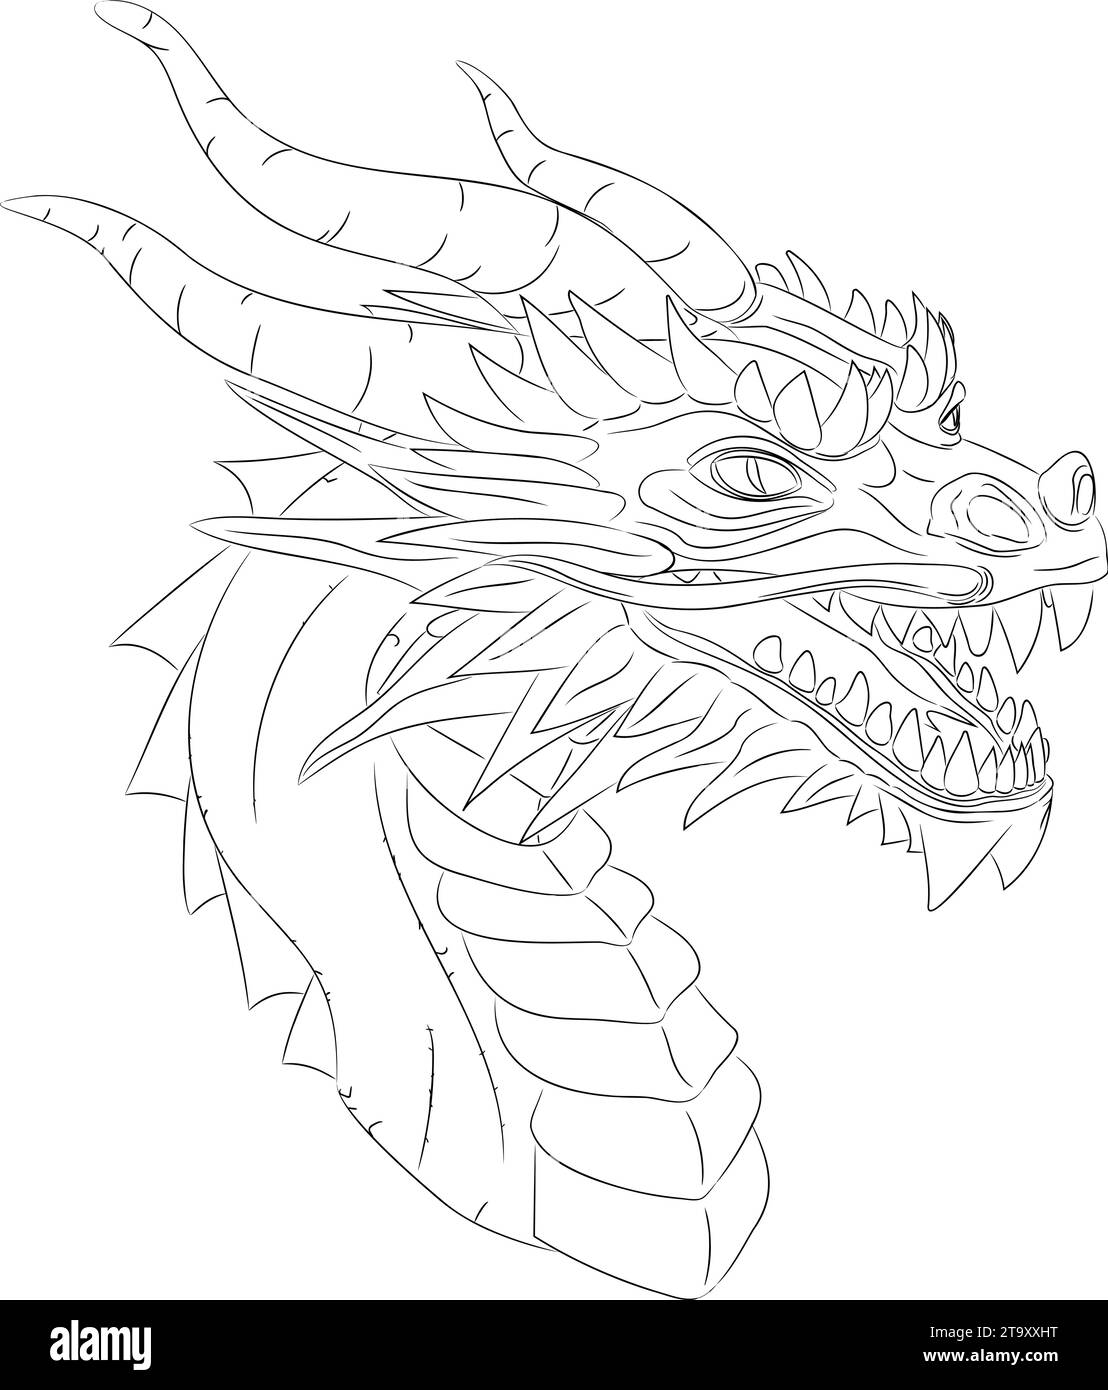 Disegno in linea di drago in legno - simbolo di 2024 illustrazione vettoriale di una testa di drago in legno verde con collo. Testa con corna, denti, baffi Illustrazione Vettoriale